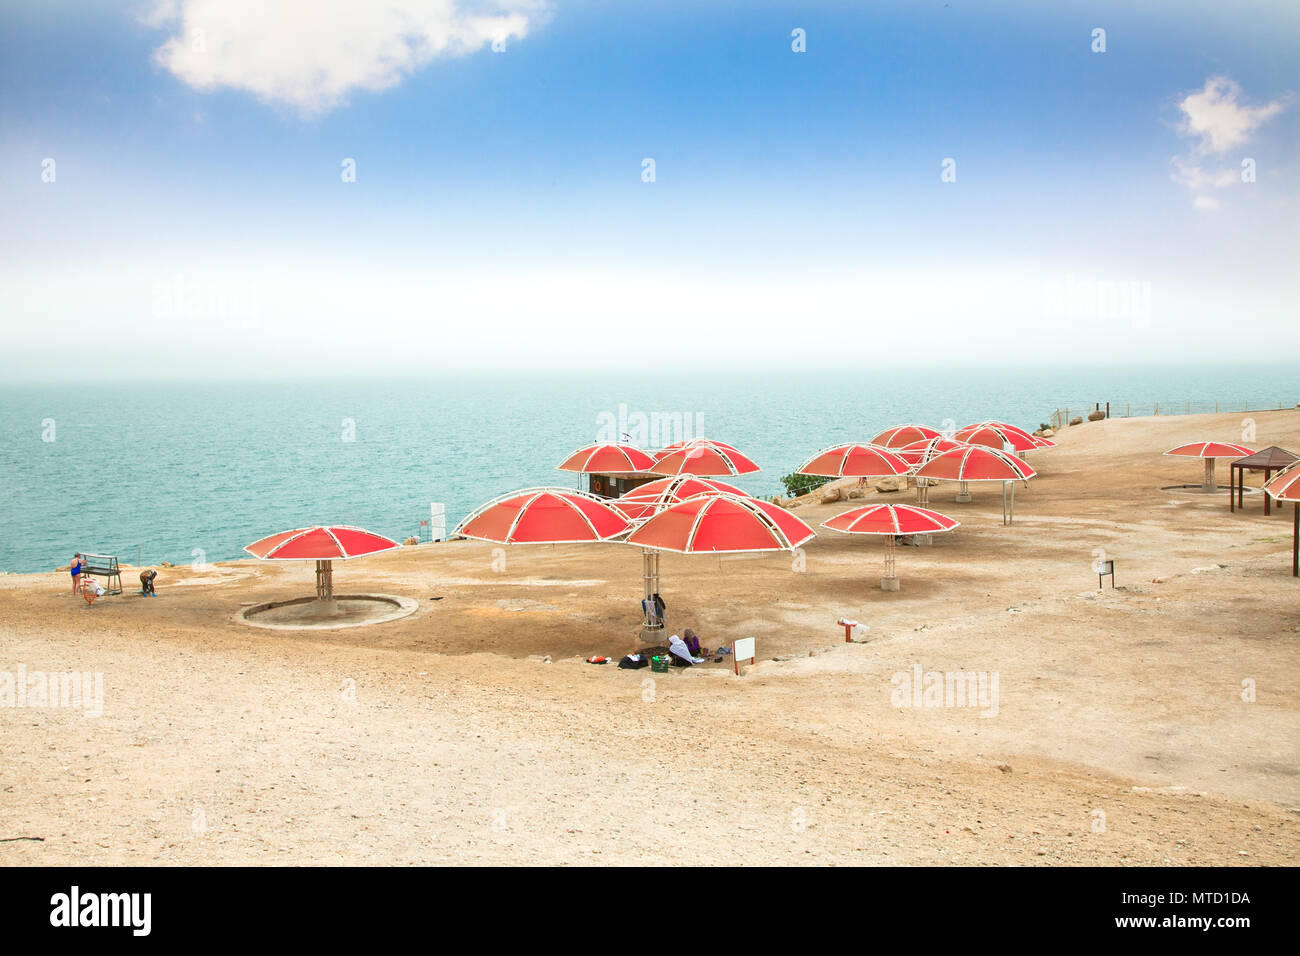 Ein Gedi oase à la mer Morte. Israël Banque D'Images